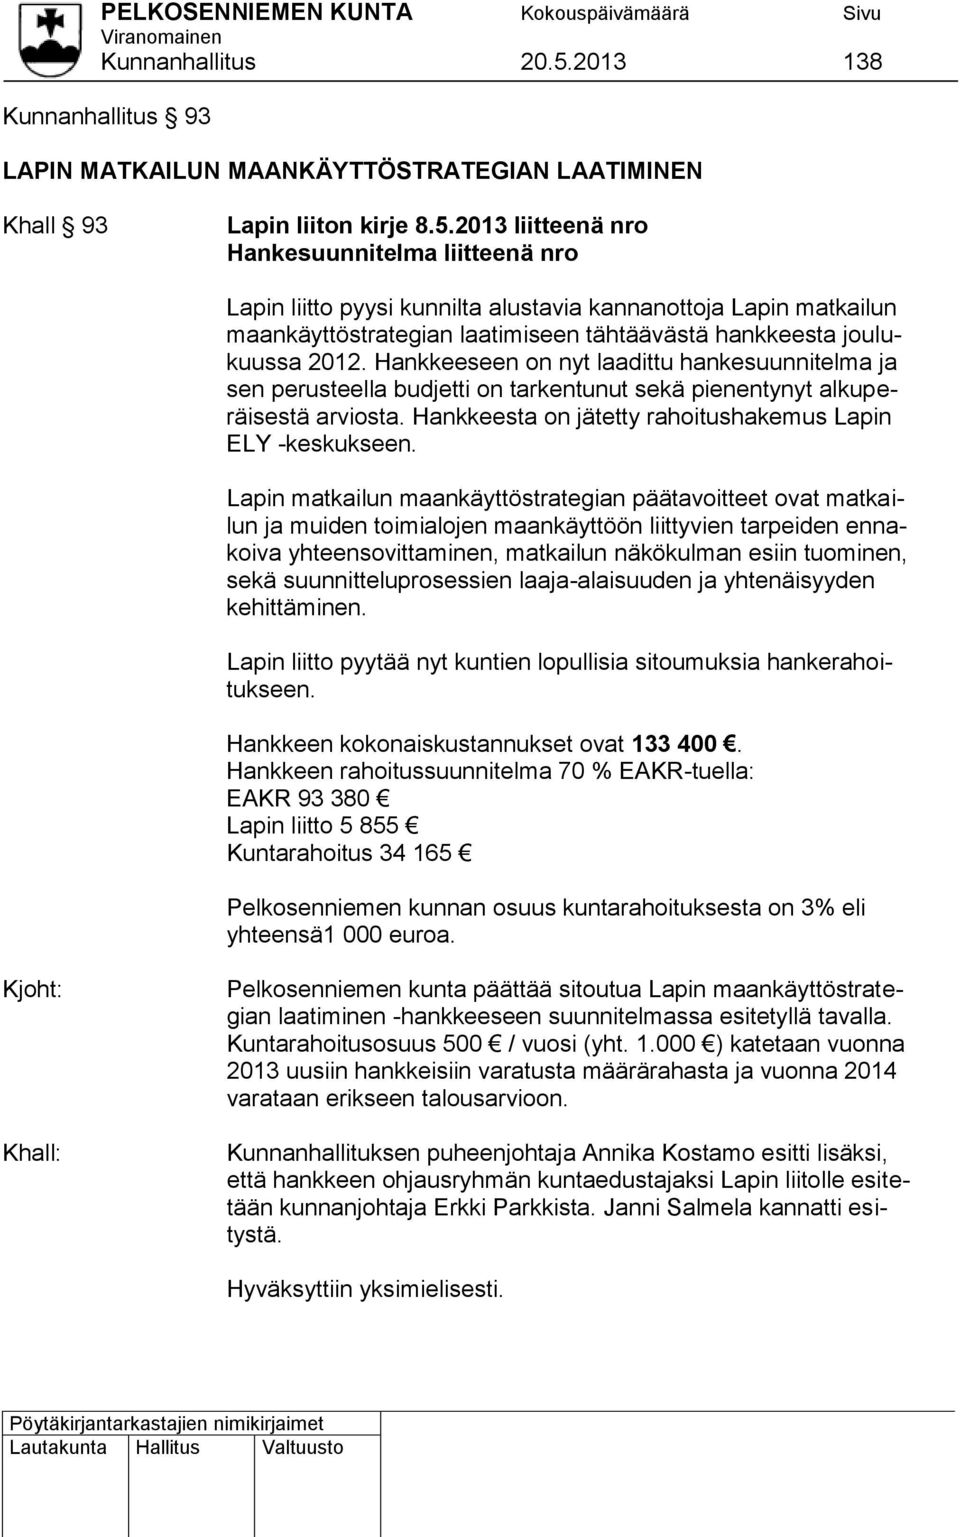 2013 liitteenä nro Hankesuunnitelma liitteenä nro Lapin liitto pyysi kunnilta alustavia kannanottoja Lapin matkailun maankäyttöstrategian laatimiseen tähtäävästä hankkeesta joulukuussa 2012.